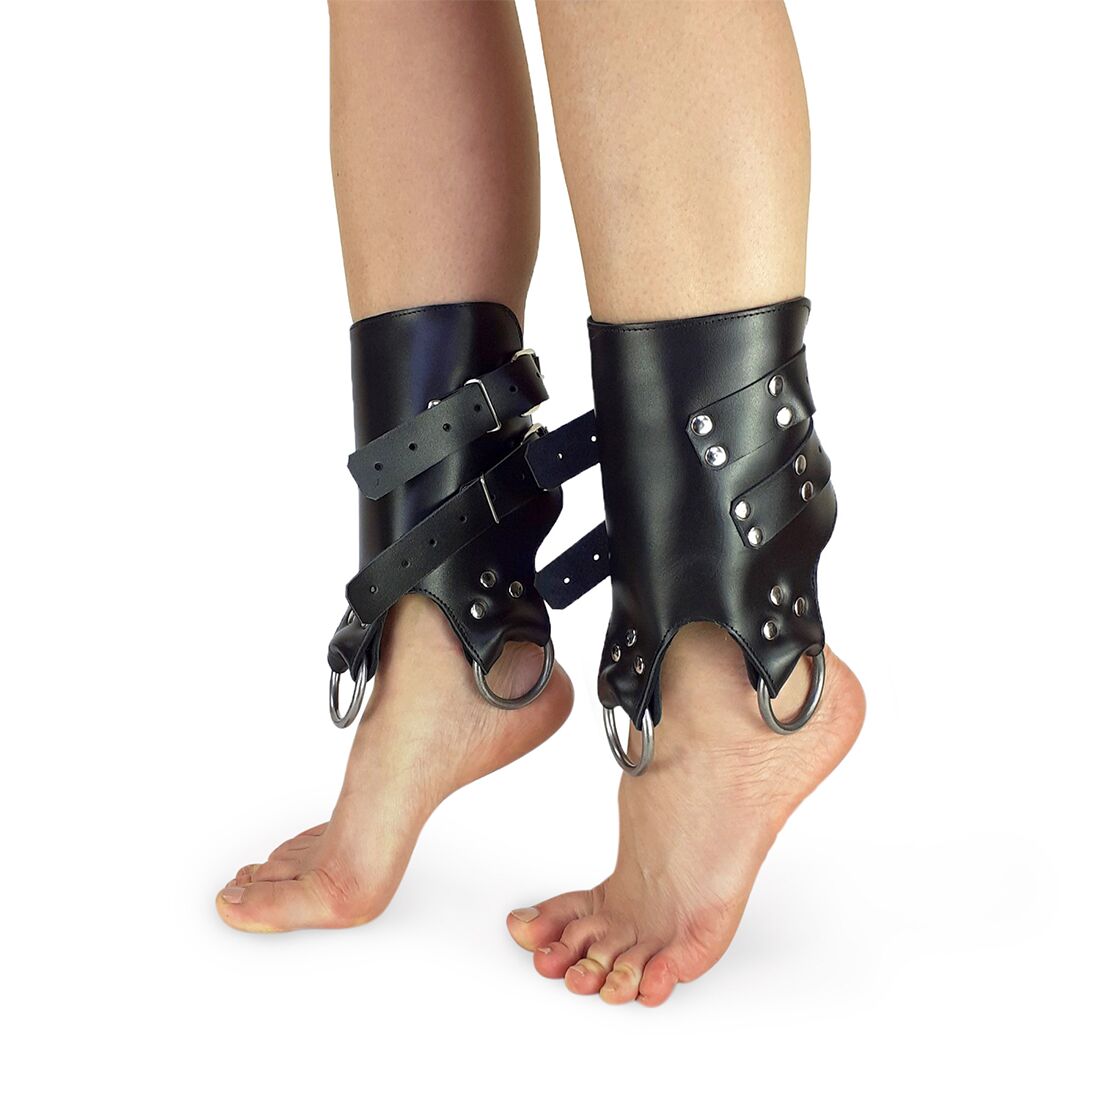 Поножи-манжеты для подвеса за ноги Art of Sex – Leg Cuffs For Suspension, черные, натуральная кожа